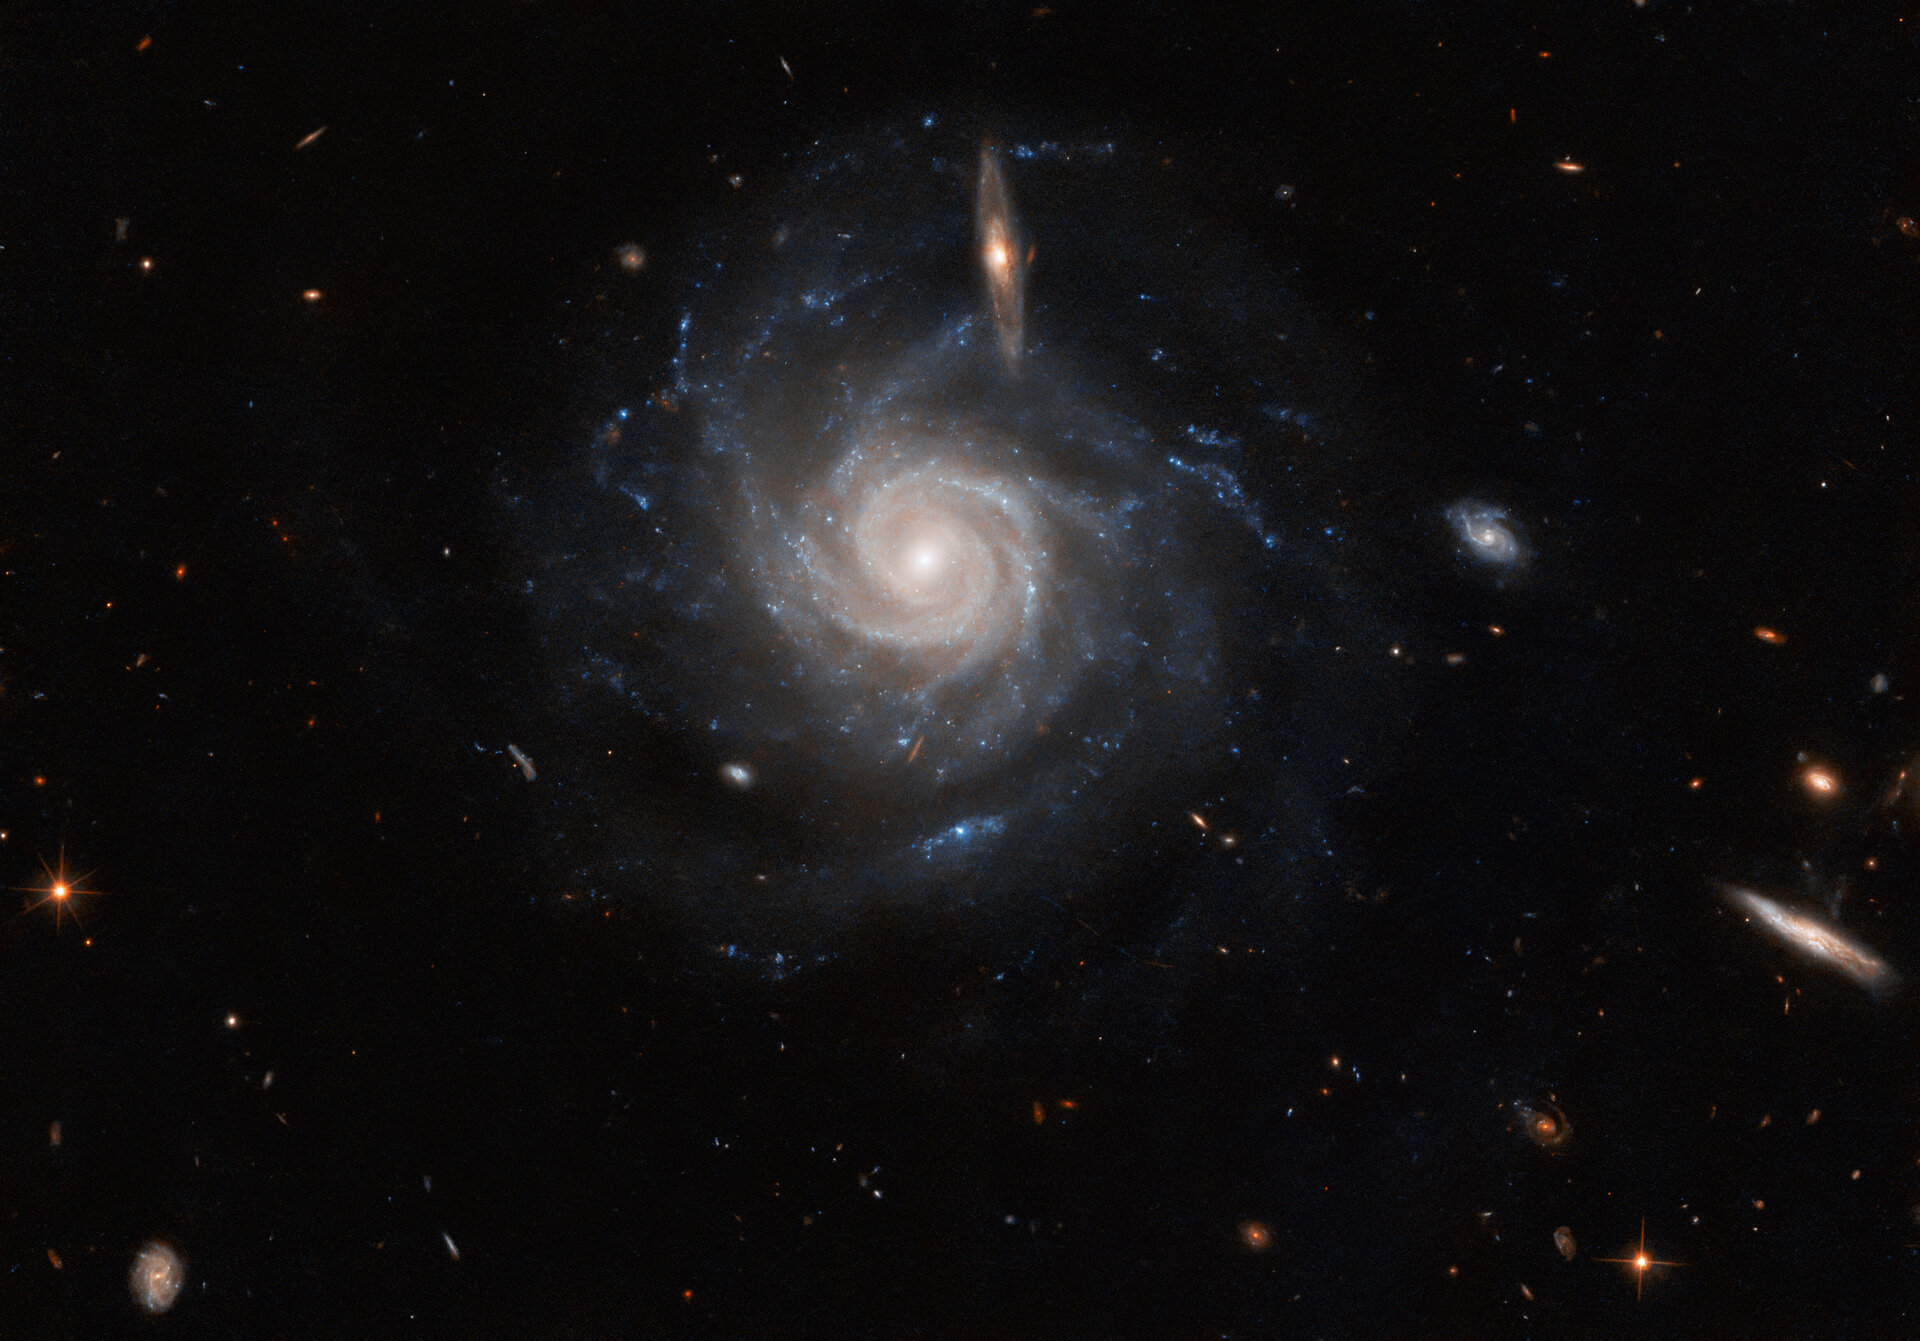 Una gran galaxia espiral. Tiene muchos brazos estrechos que están fuertemente torcidos en el centro, pero en los extremos apuntan en diferentes direcciones. Crédito: ESA/Hubble & NASA, C. Kilpatrick, R. J. Foley